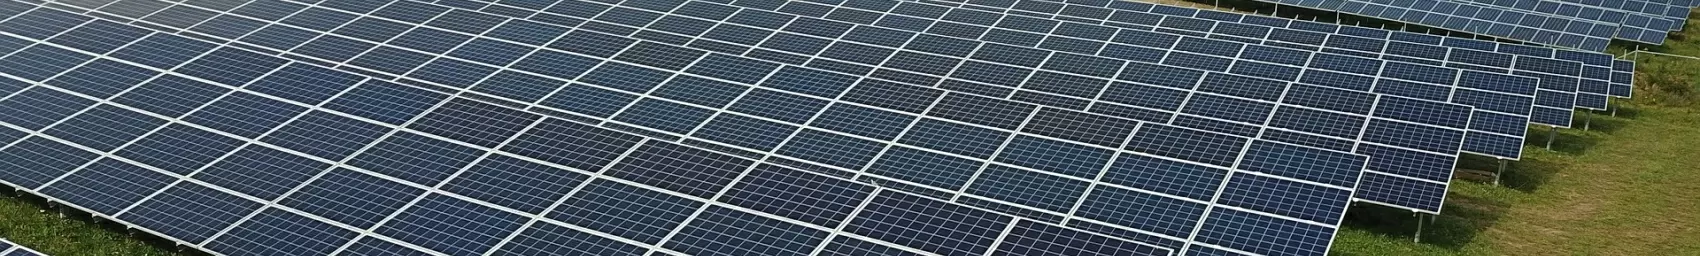 Panells d'energia solar fotovoltaica